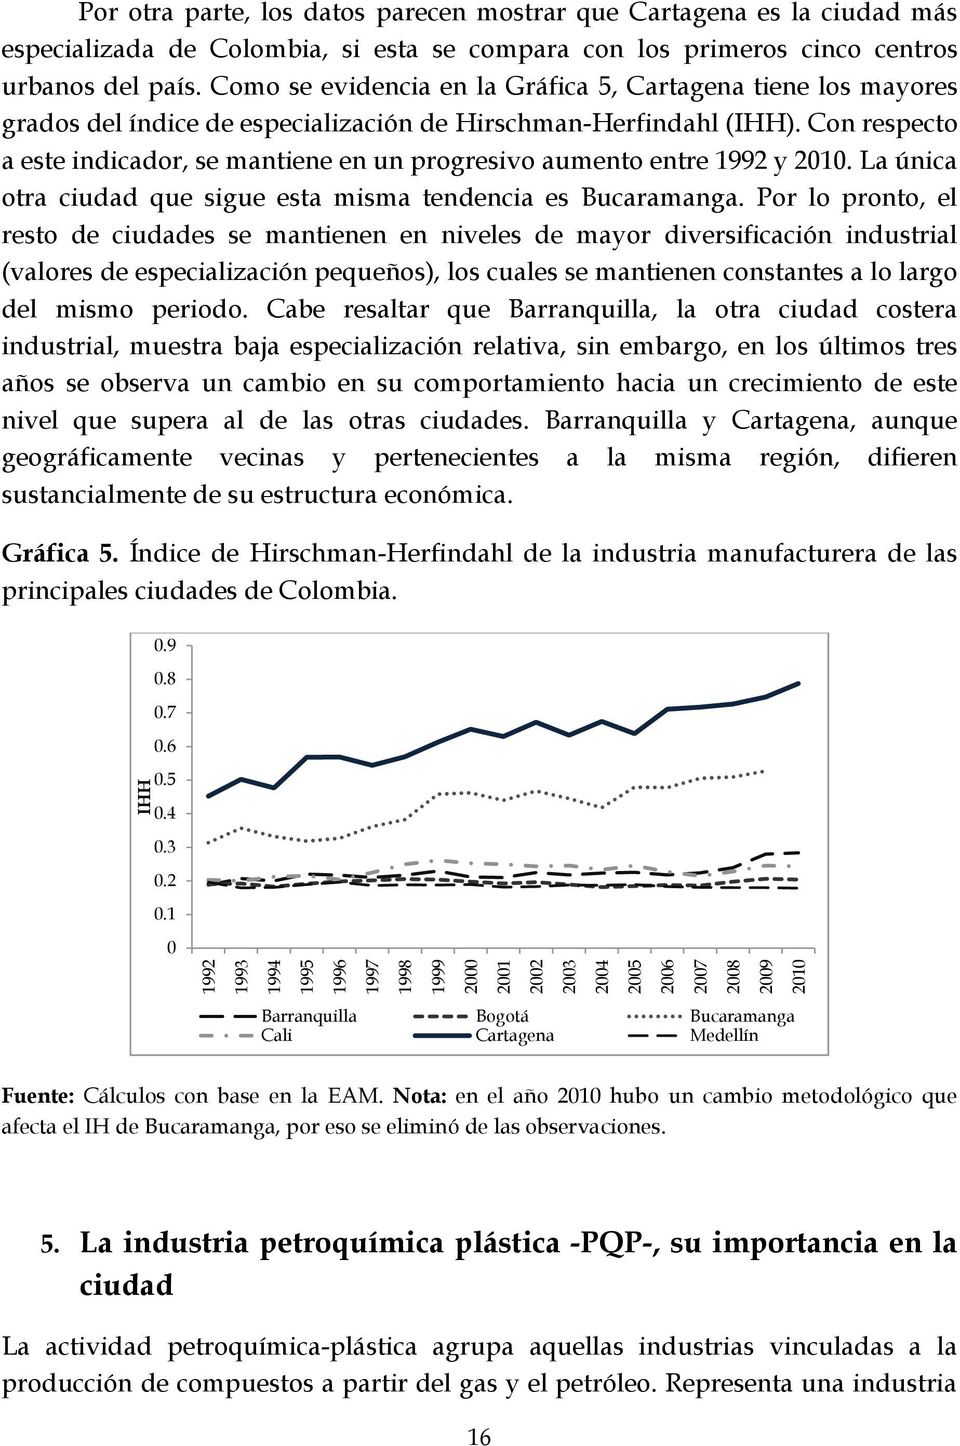 Con respecto a este indicador, se mantiene en un progresivo aumento entre 1992 y 2010. La única otra ciudad que sigue esta misma tendencia es Bucaramanga.